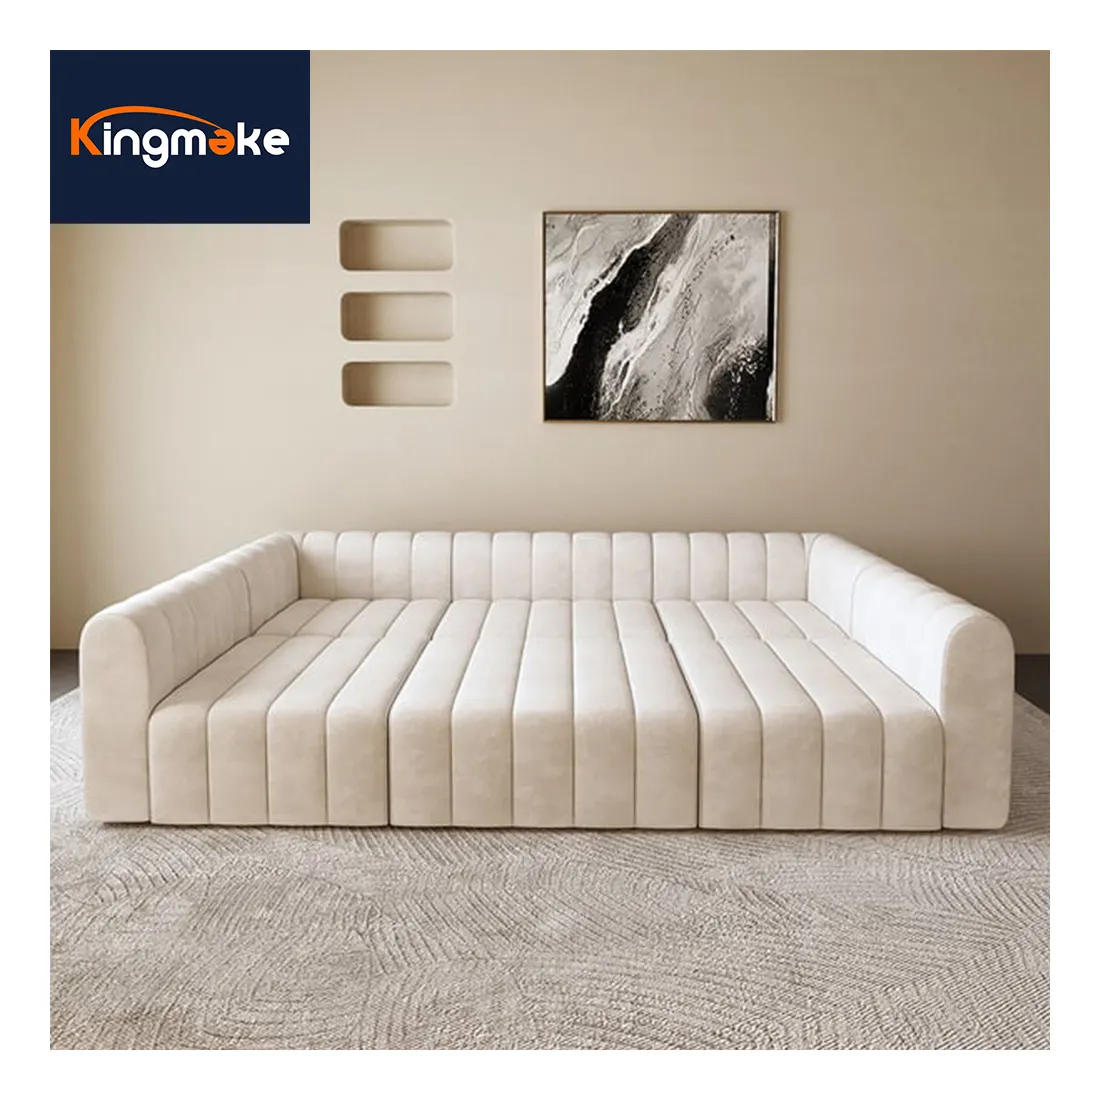 Уникальный дизайн гостиной диван гостиничный лобби диван с просторной зоной отдыха Крытый Большой Диван